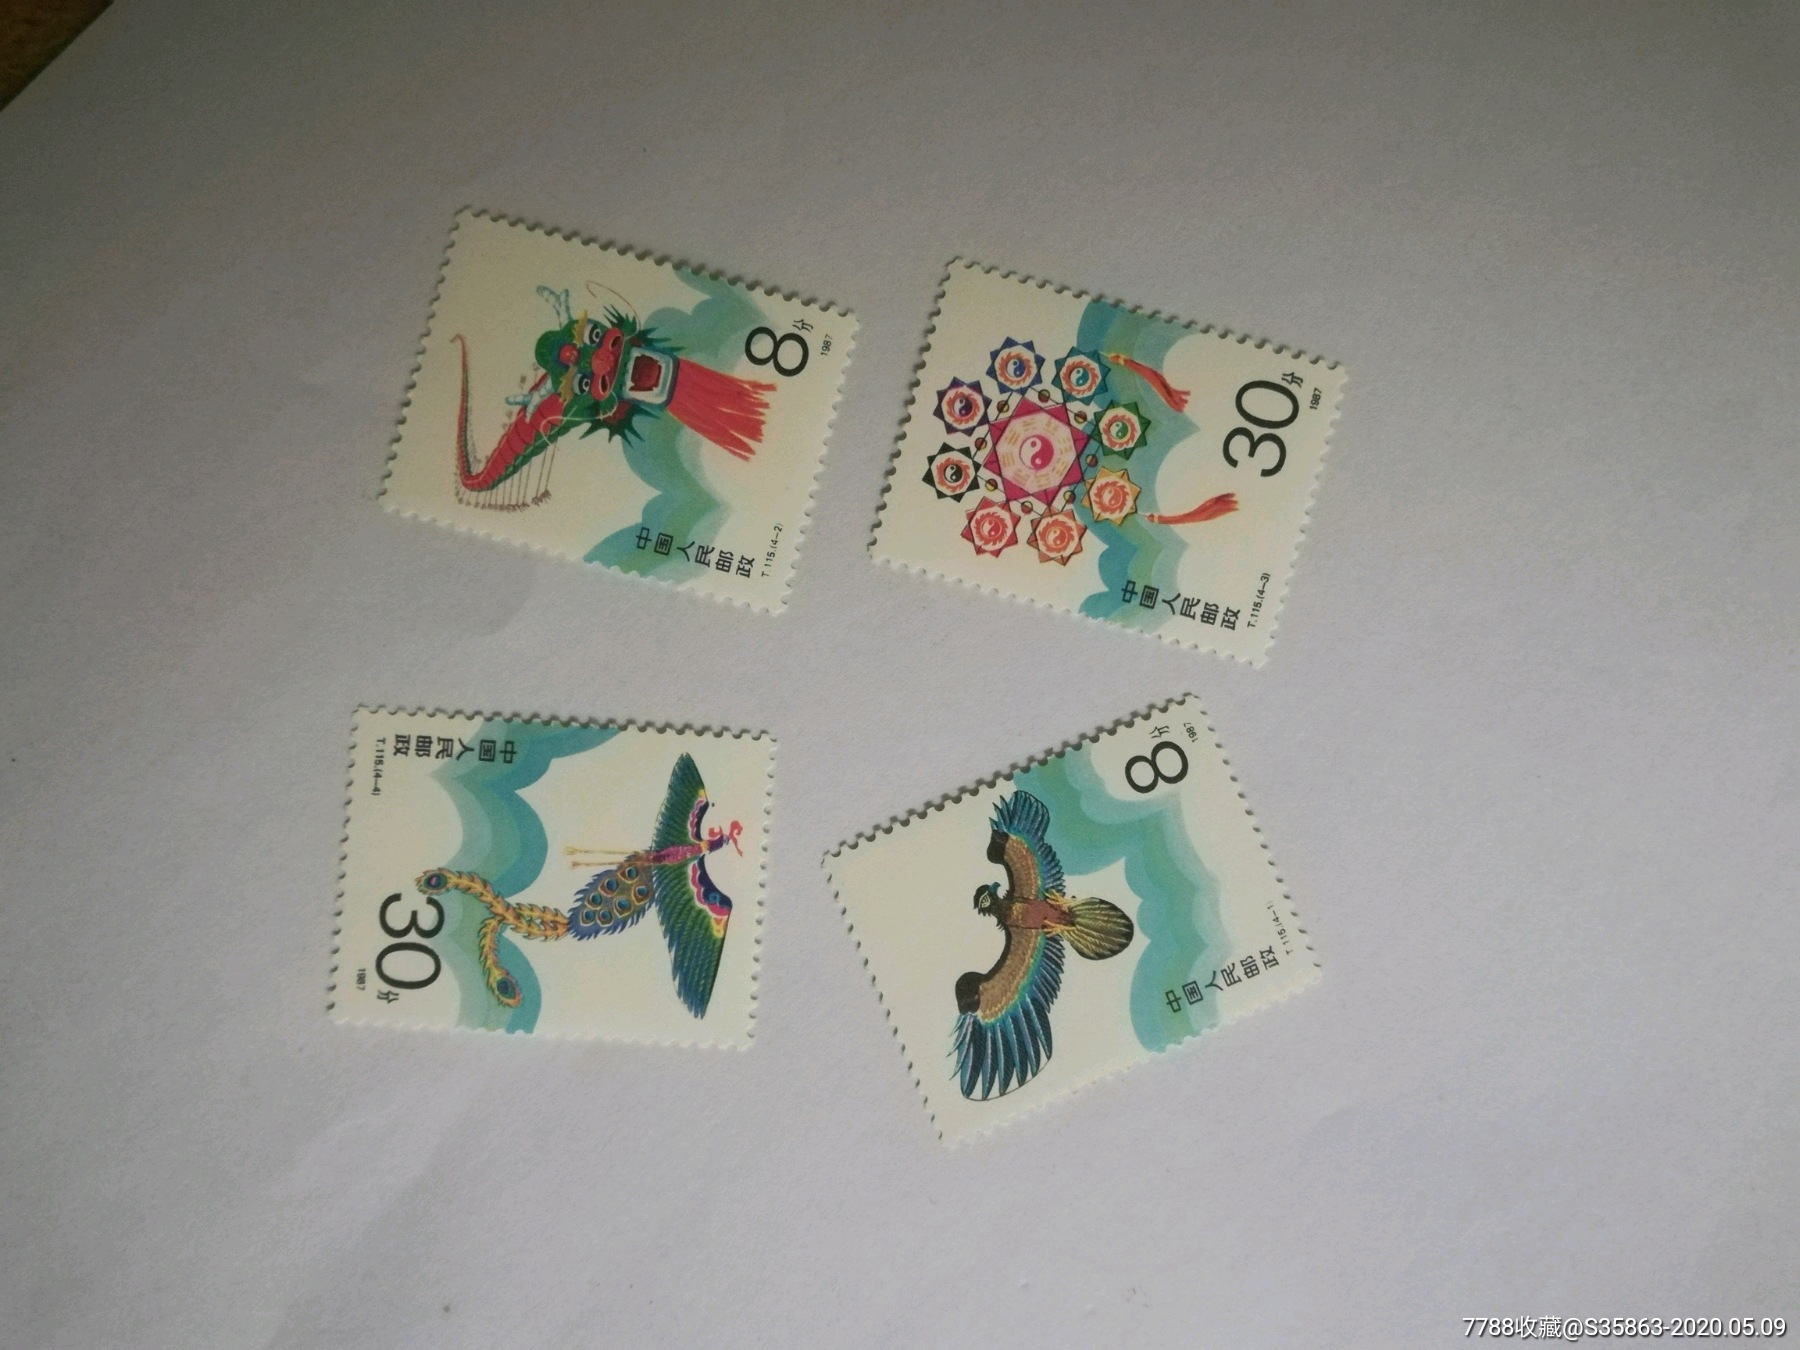 一张风筝邮票稿件图片